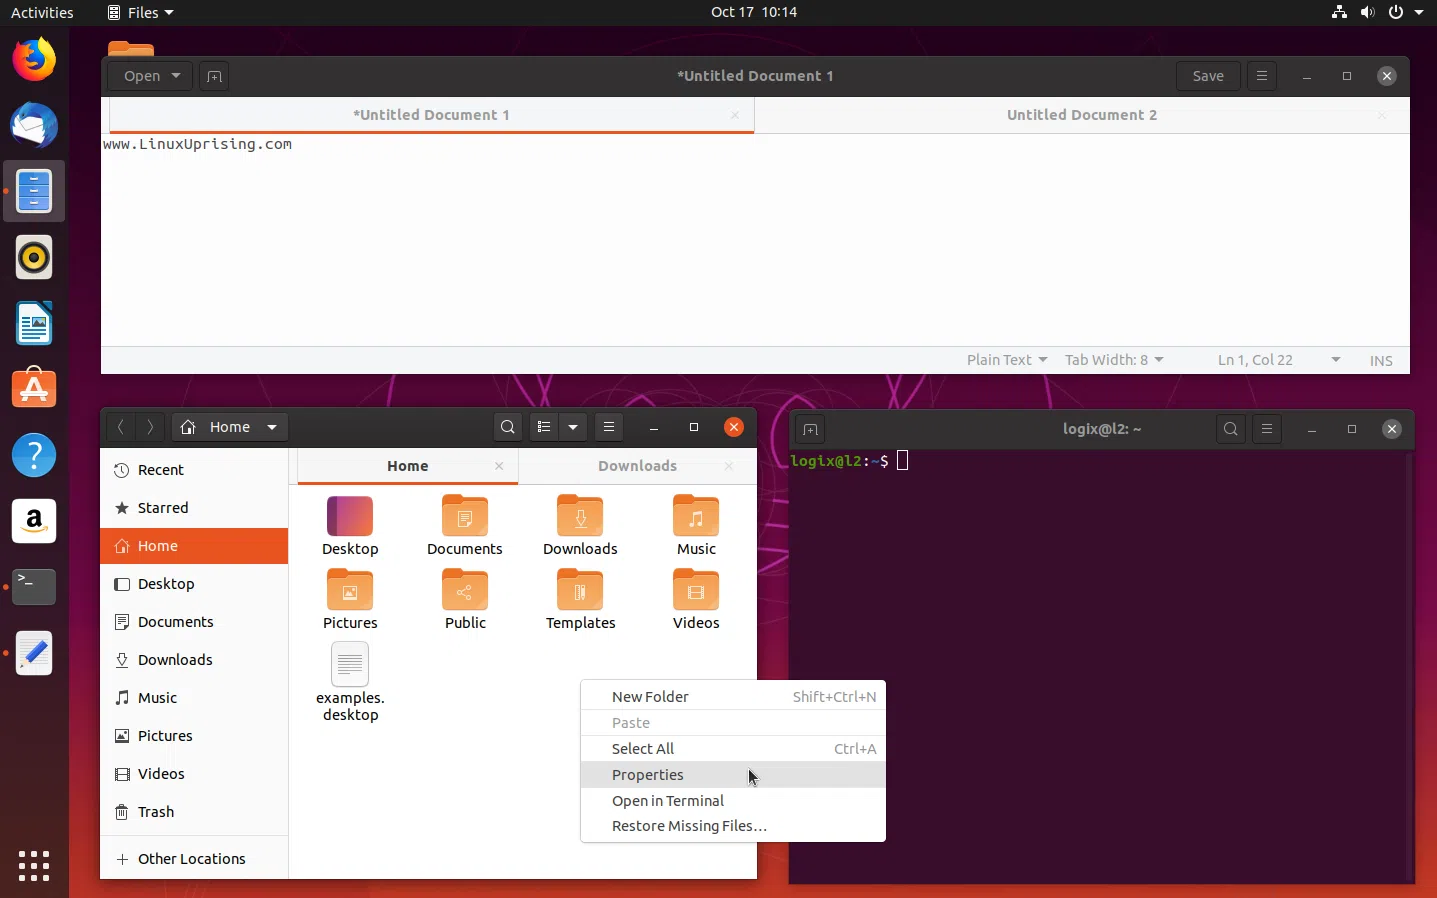 Imagens do Ubuntu 19.10 Yaru